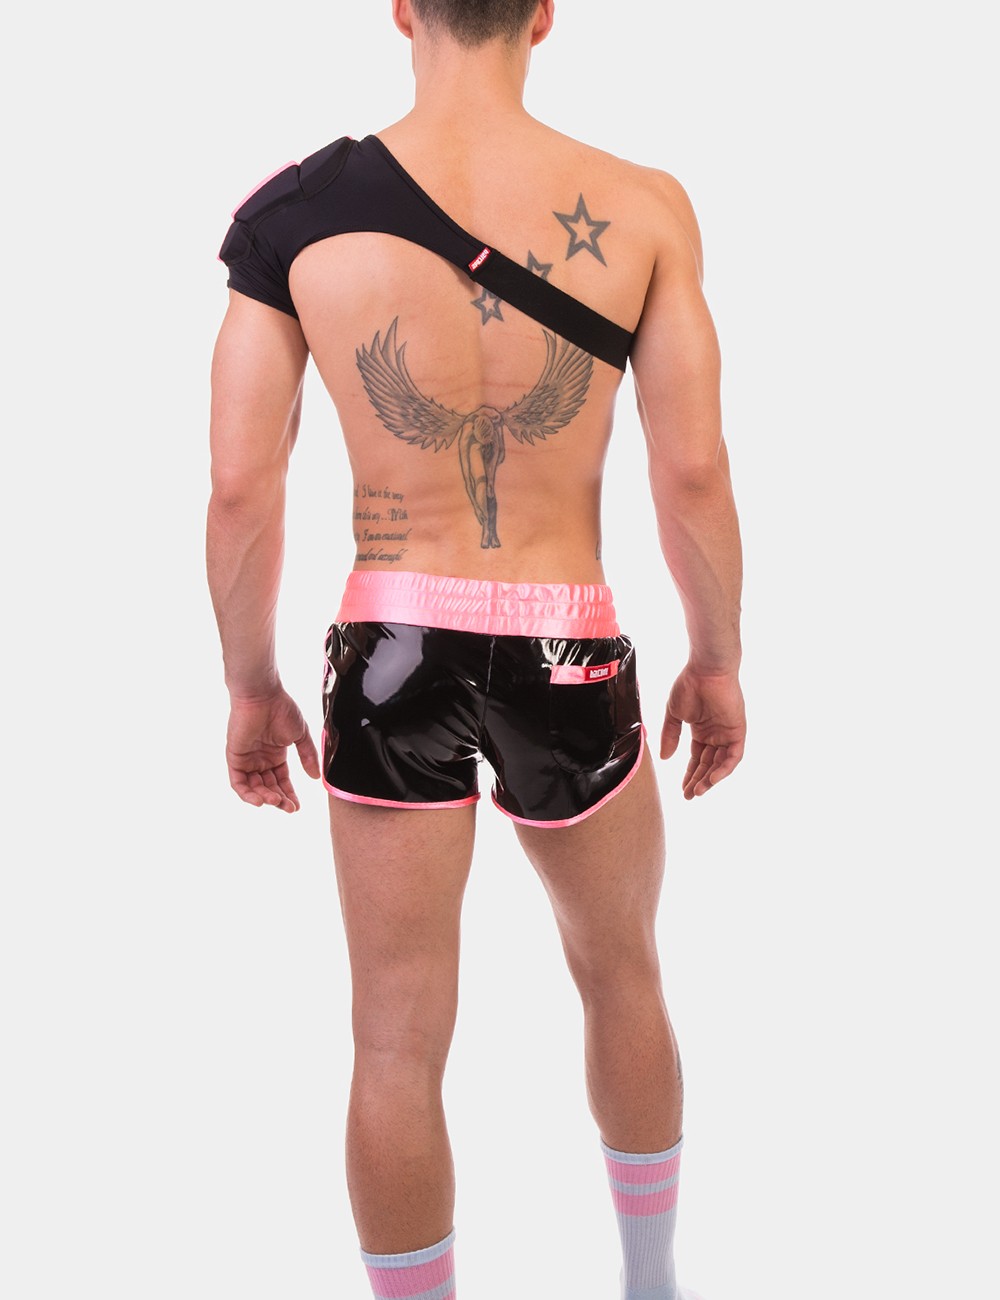 Disco Single Shoulder Pad  von Barcode Berlin Model " Pad "Neonpink im Gaywear Fetisch Style 